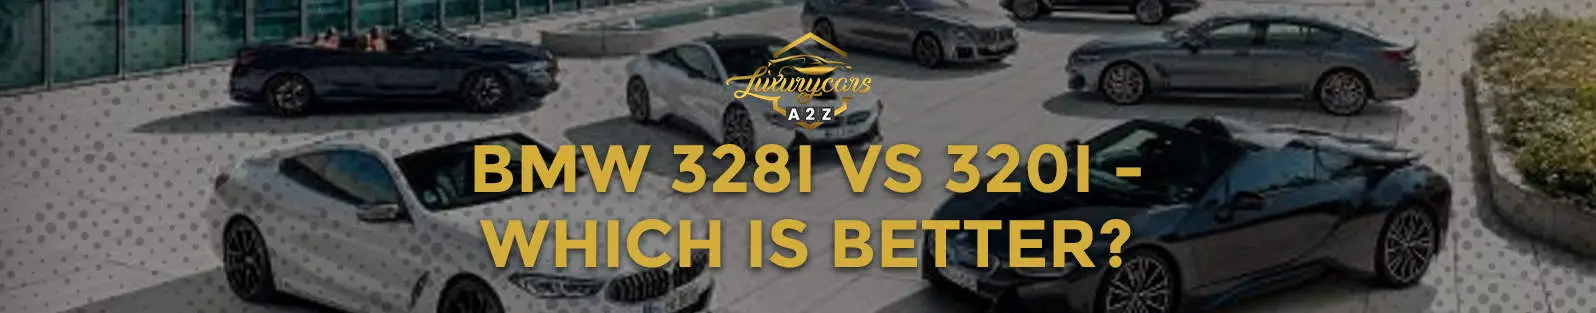 BMW 328i vs. 320i - laquelle est la meilleure ?